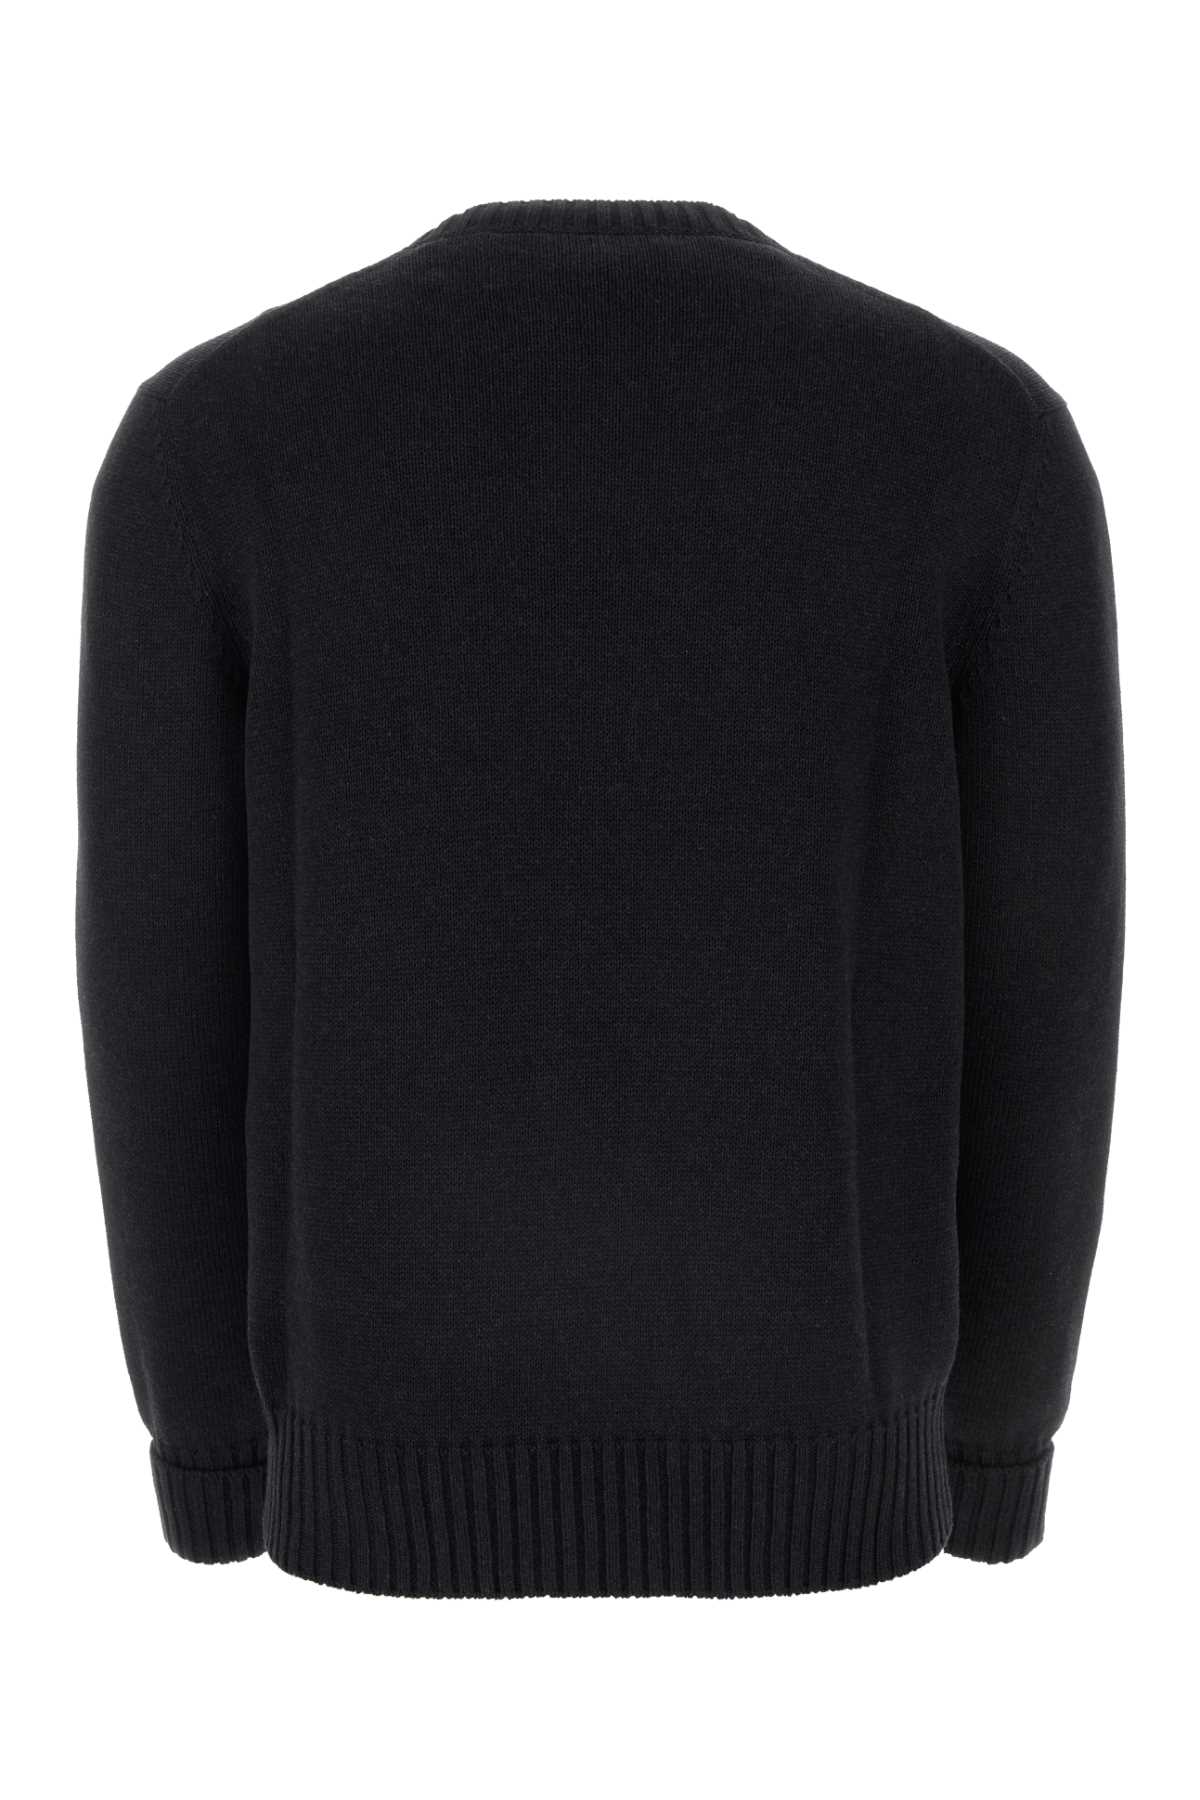 Shop Alexander Mcqueen Charcoal Cotton Sweater In Charcoalsteel